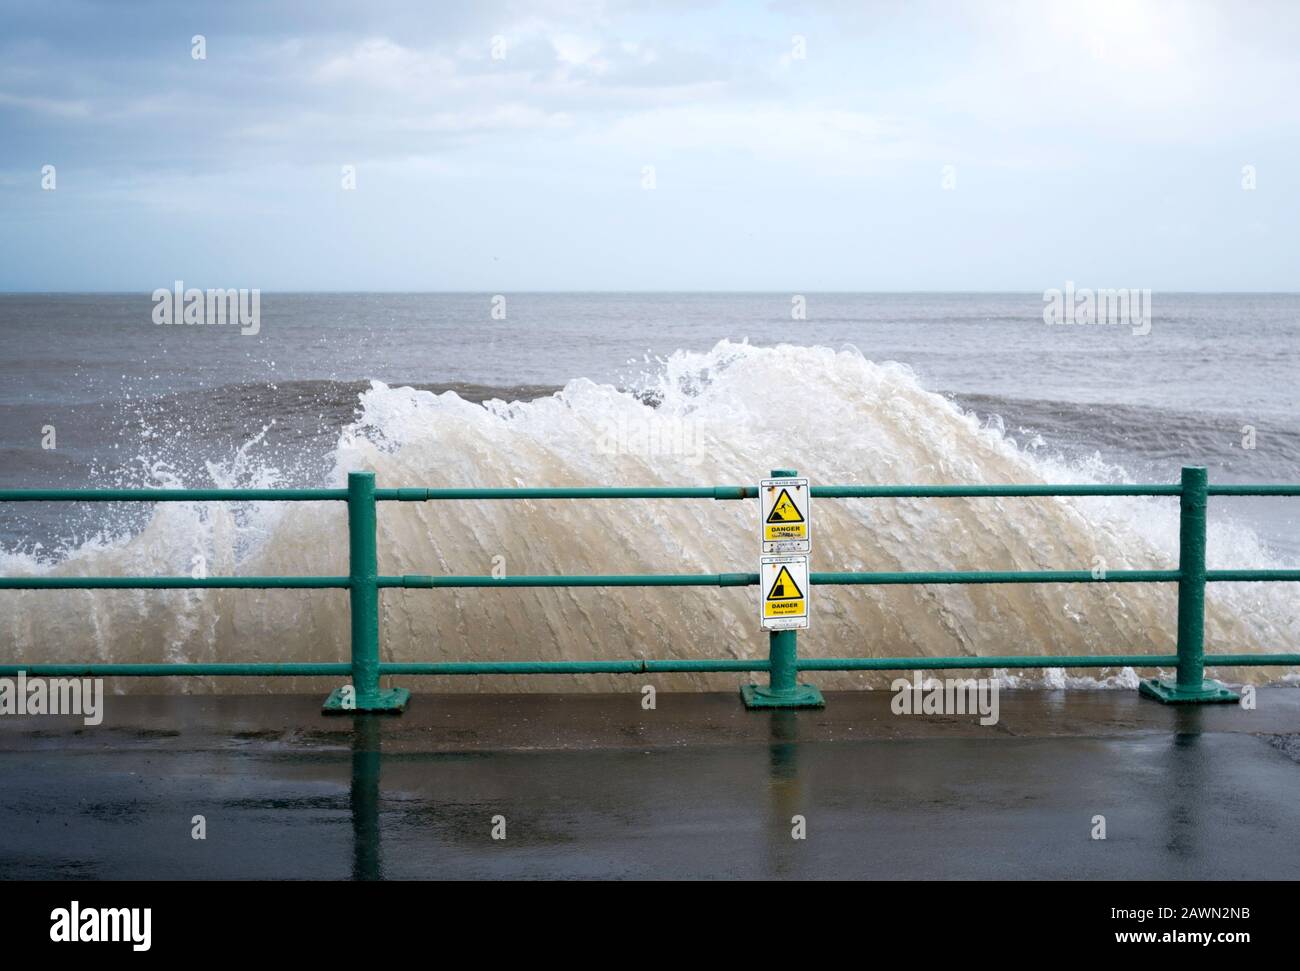 Segnali di allarme e onde che si infrangono sulle difese del mare durante la tempesta Ciara a Seaburn, Sunderland, Inghilterra, Regno Unito, 09 Feb 2020 Foto Stock